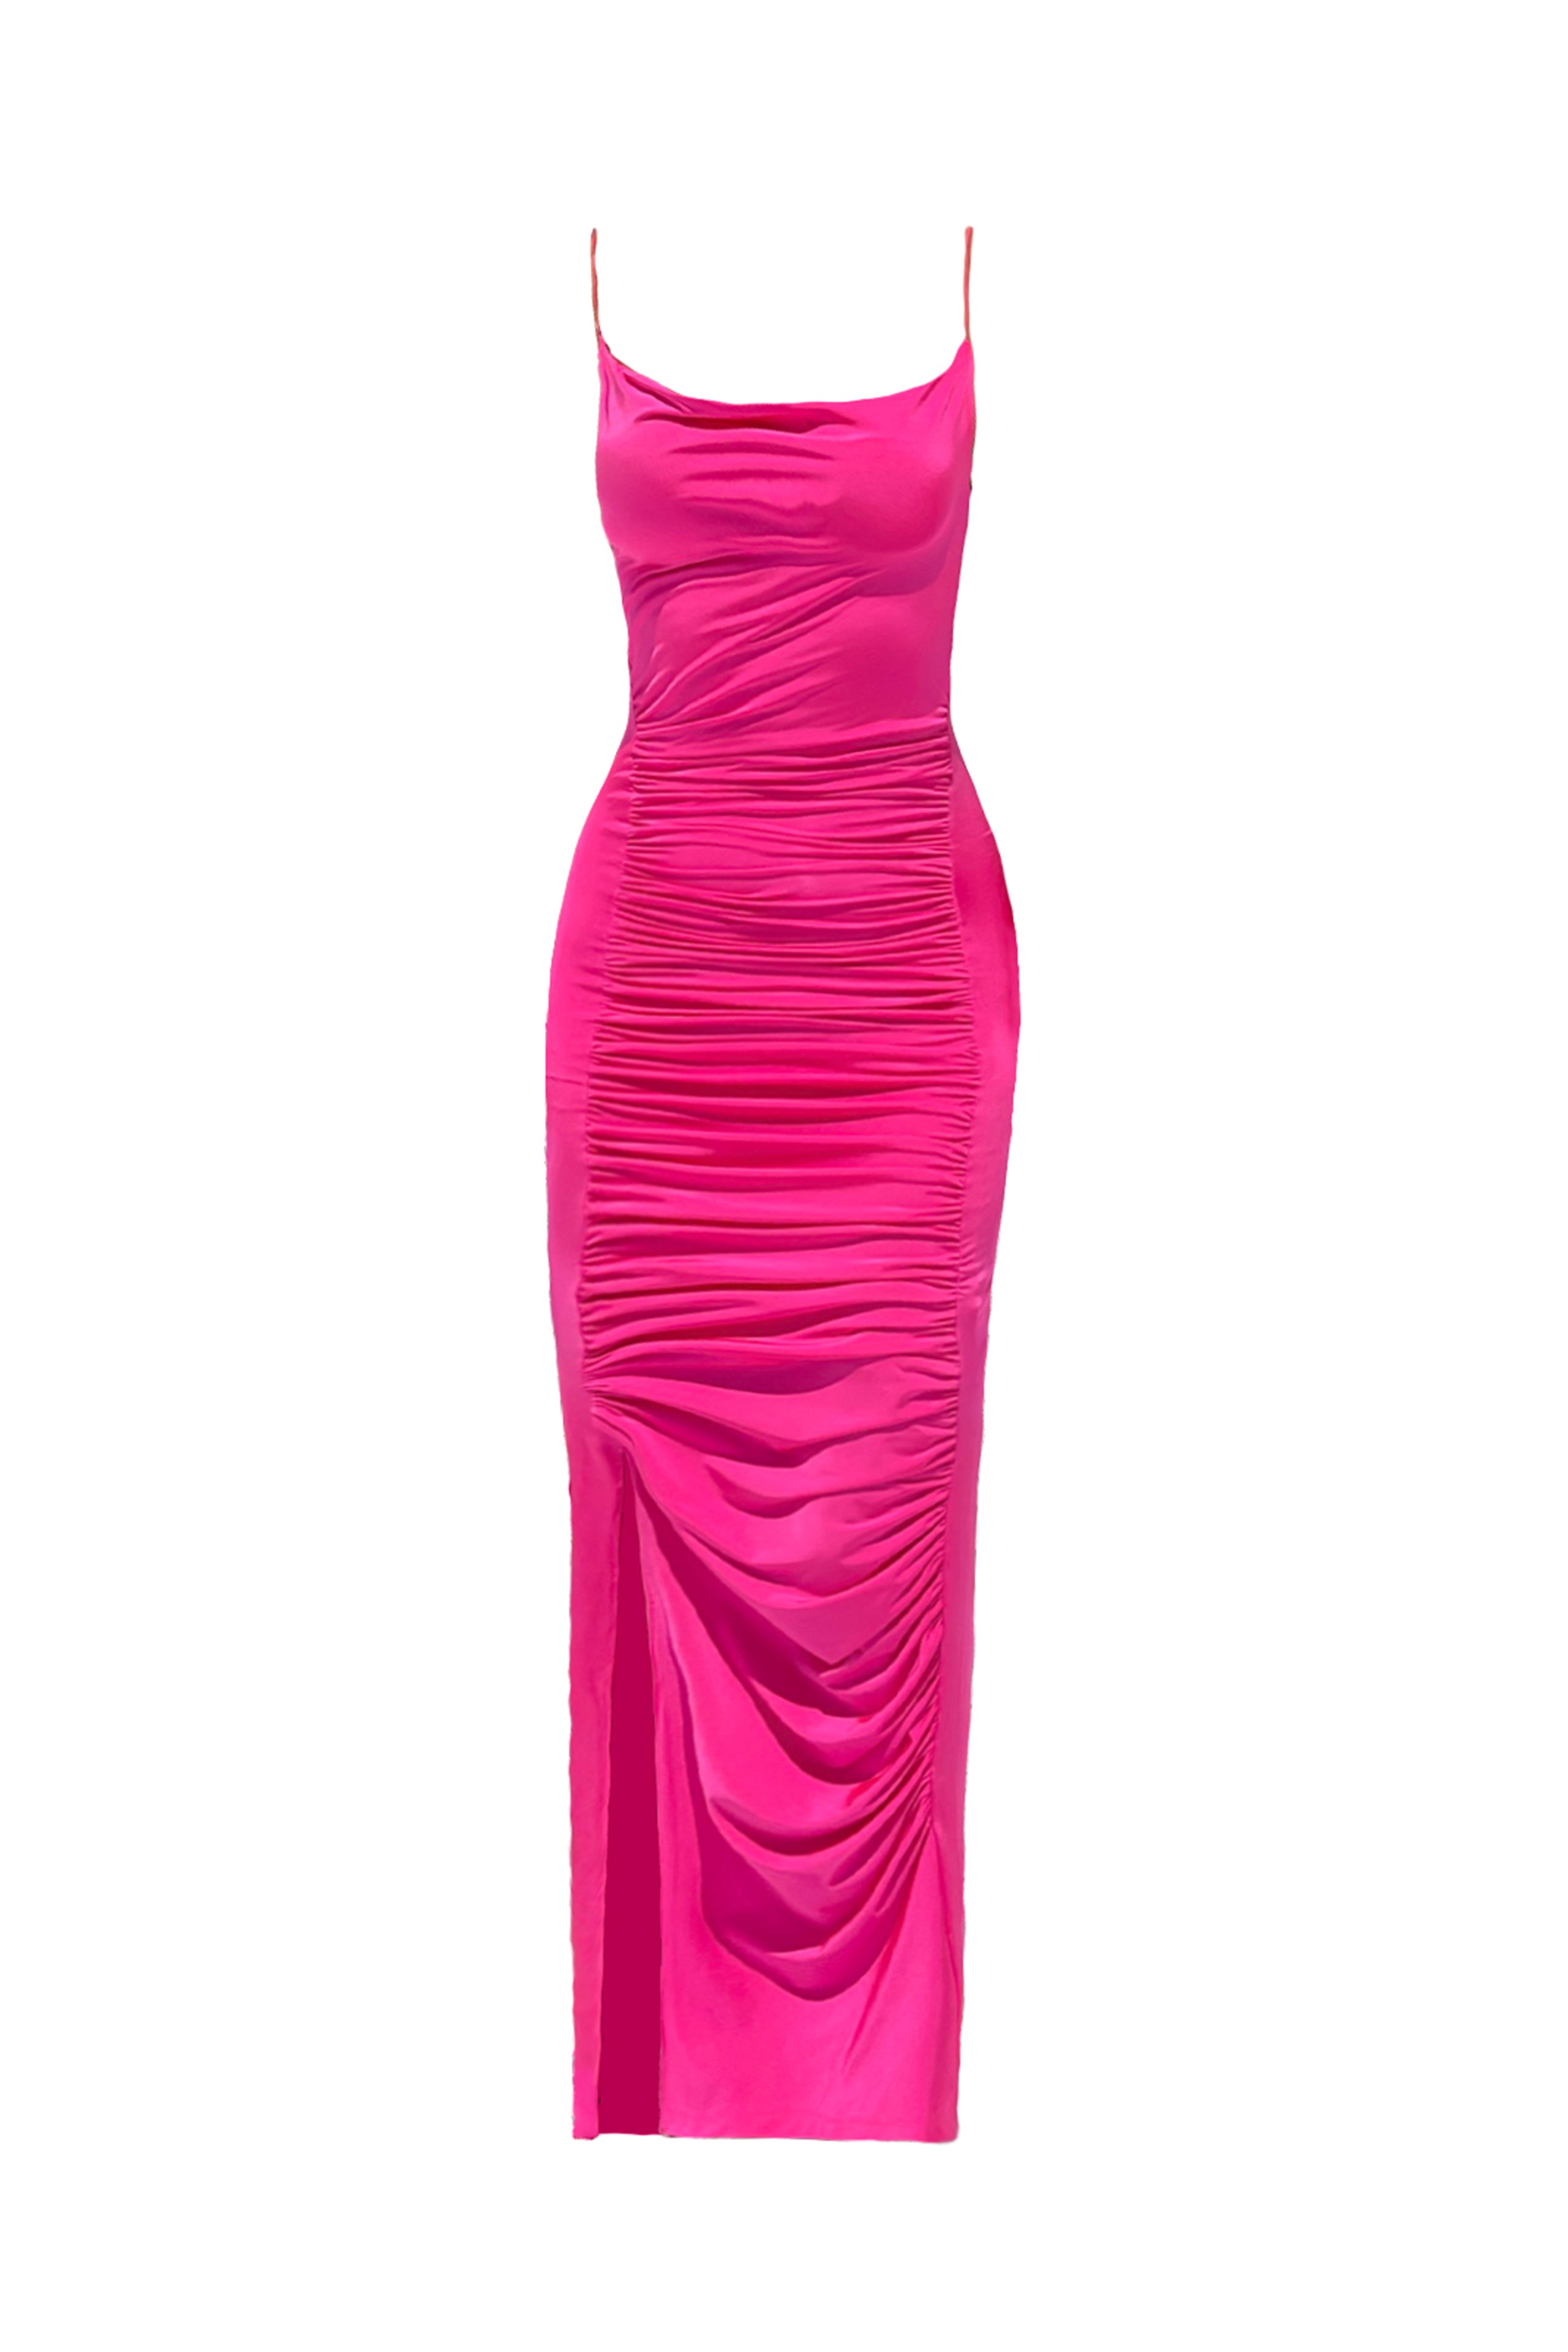 Aryane Pink Dress